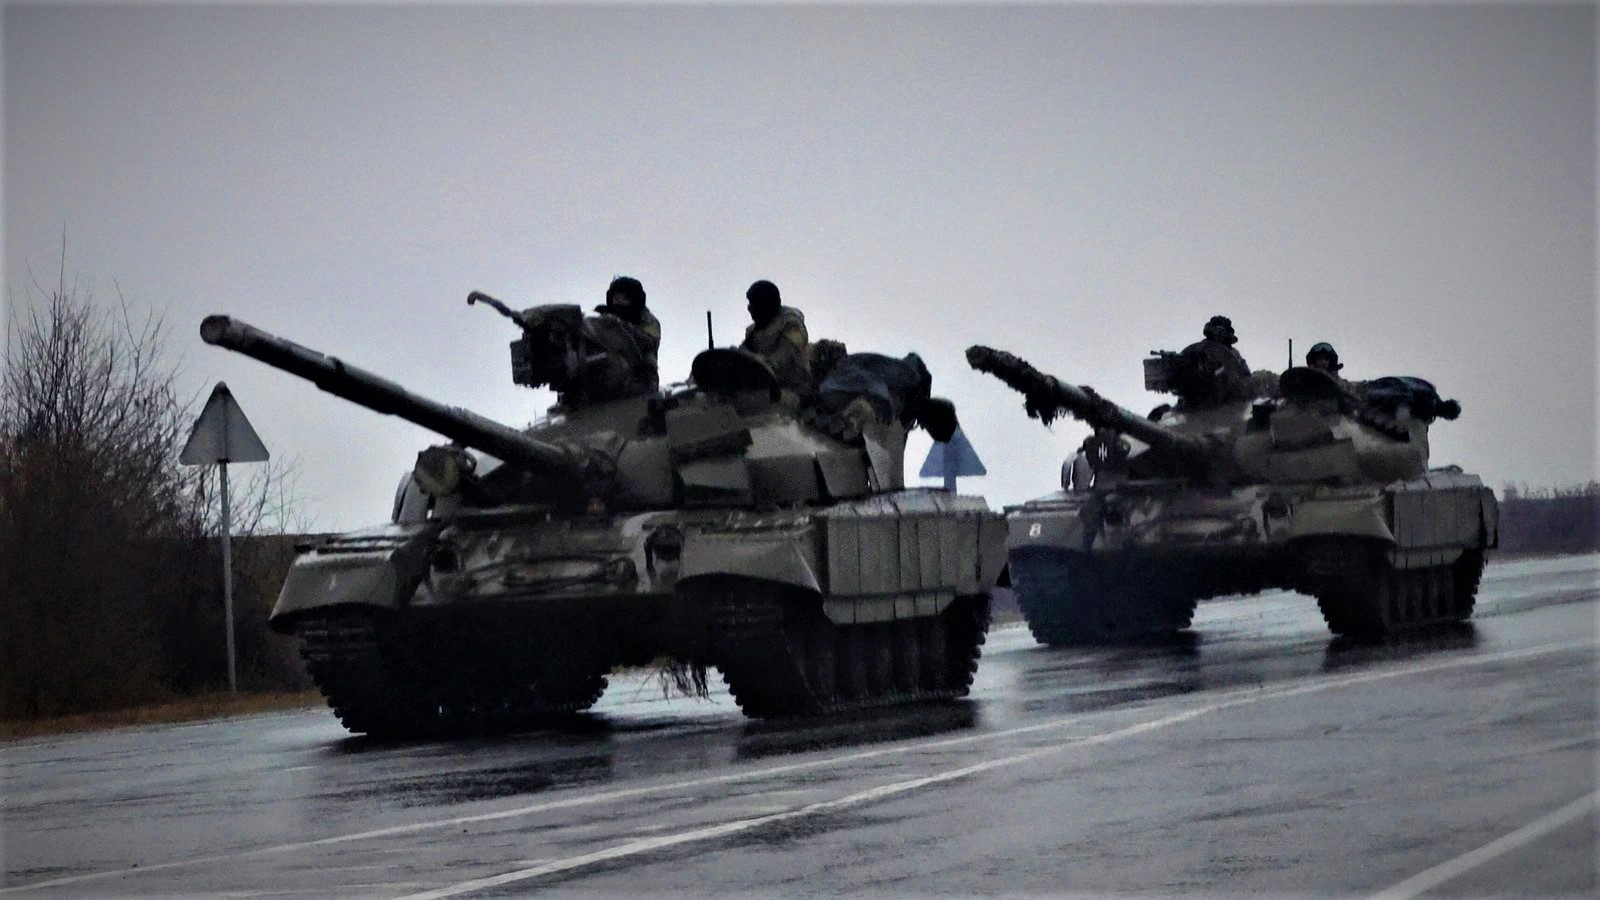 Οι Ρώσοι «έκοψαν» στα δύο την Αβντίιβκα και περικυκλώνουν τους Ουκρανούς – Β.Ζελένσκι: «Η κατάσταση είναι πολύ δύσκολη»